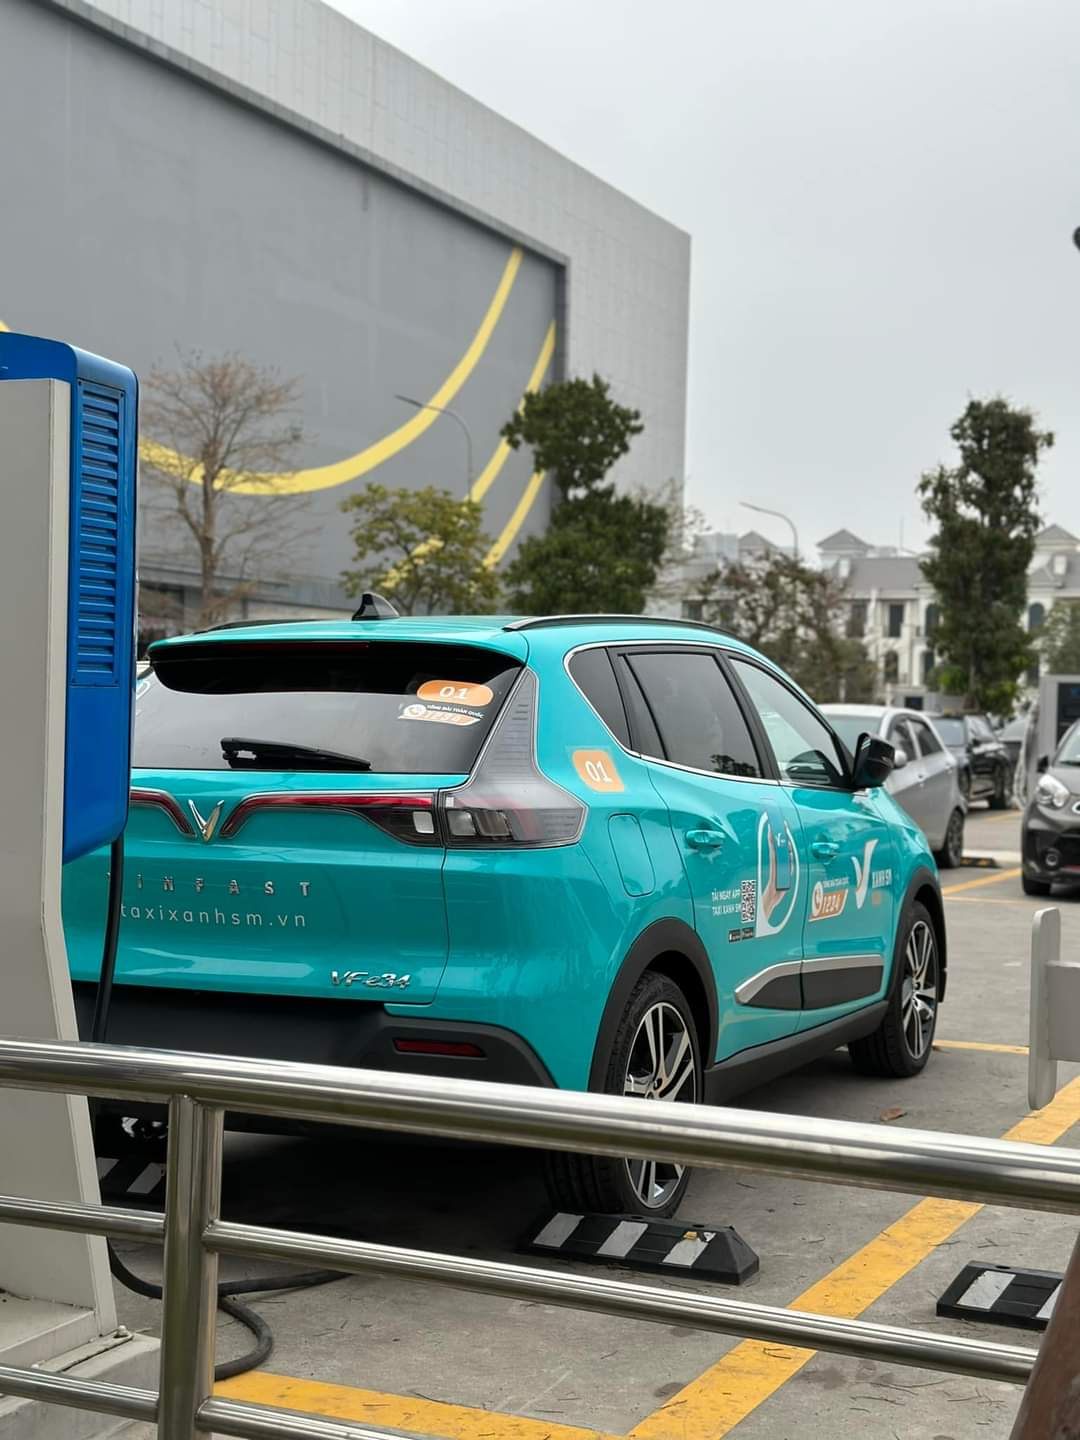 Lộ diện chiếc ô tô điện sẽ được tỷ phú Phạm Nhật Vượng dùng làm dịch vụ taxi: Mẫu mã, màu sắc ra sao? - Ảnh 1.